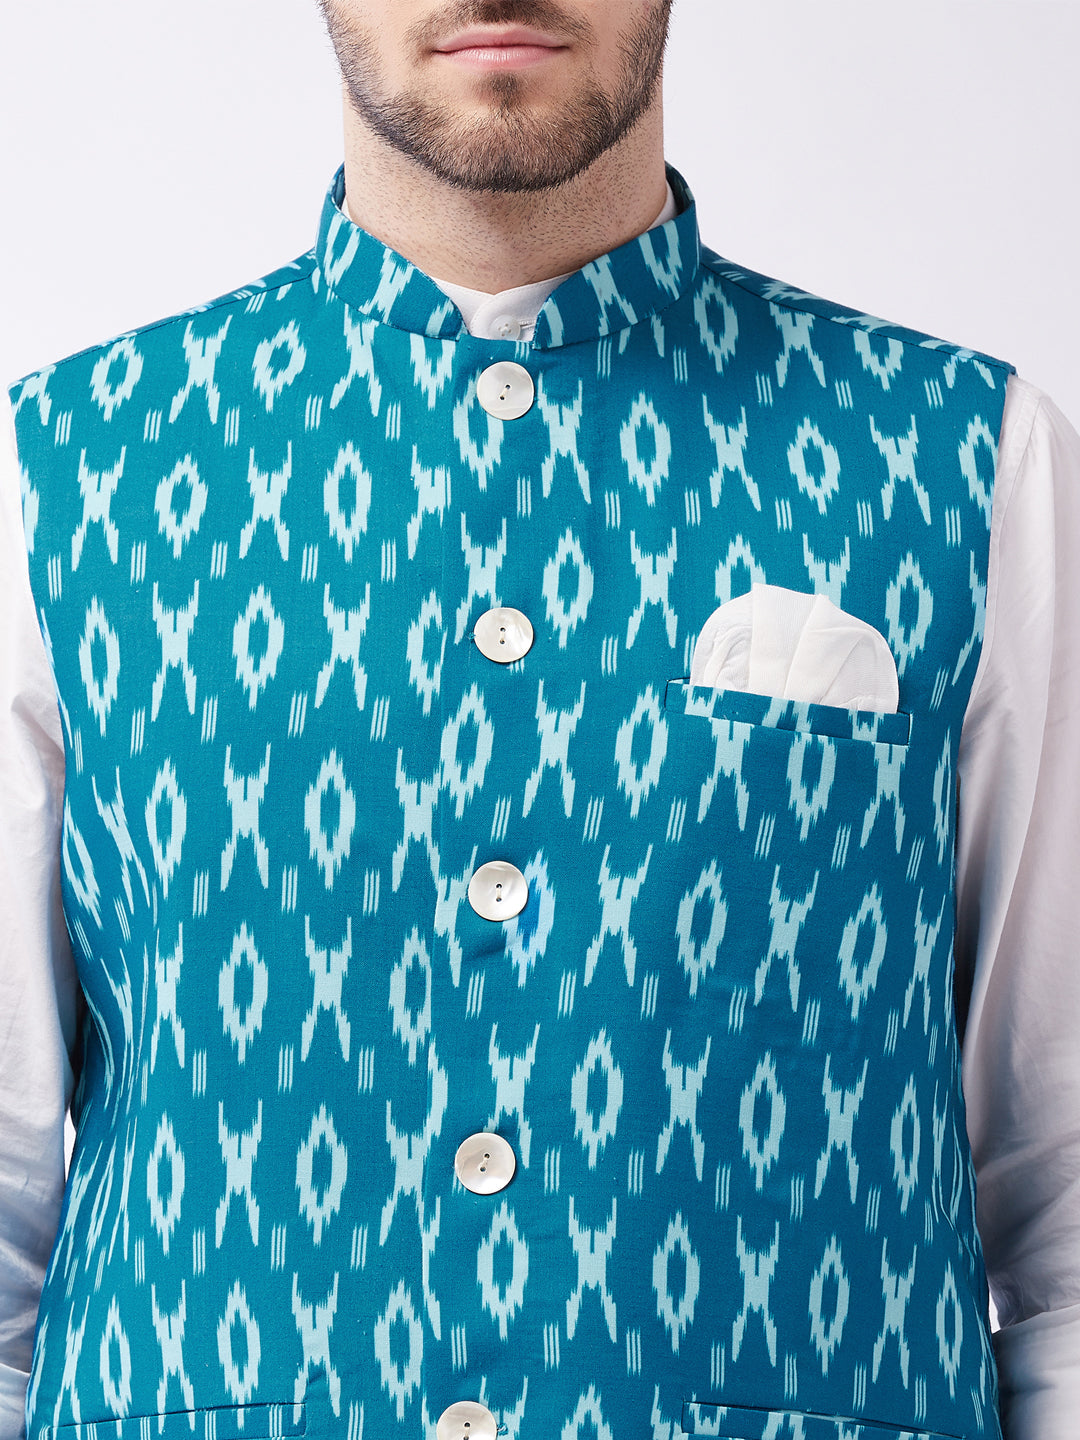 Vastramay Men's Turquoise Cotton Nehru Jacket - Distacart